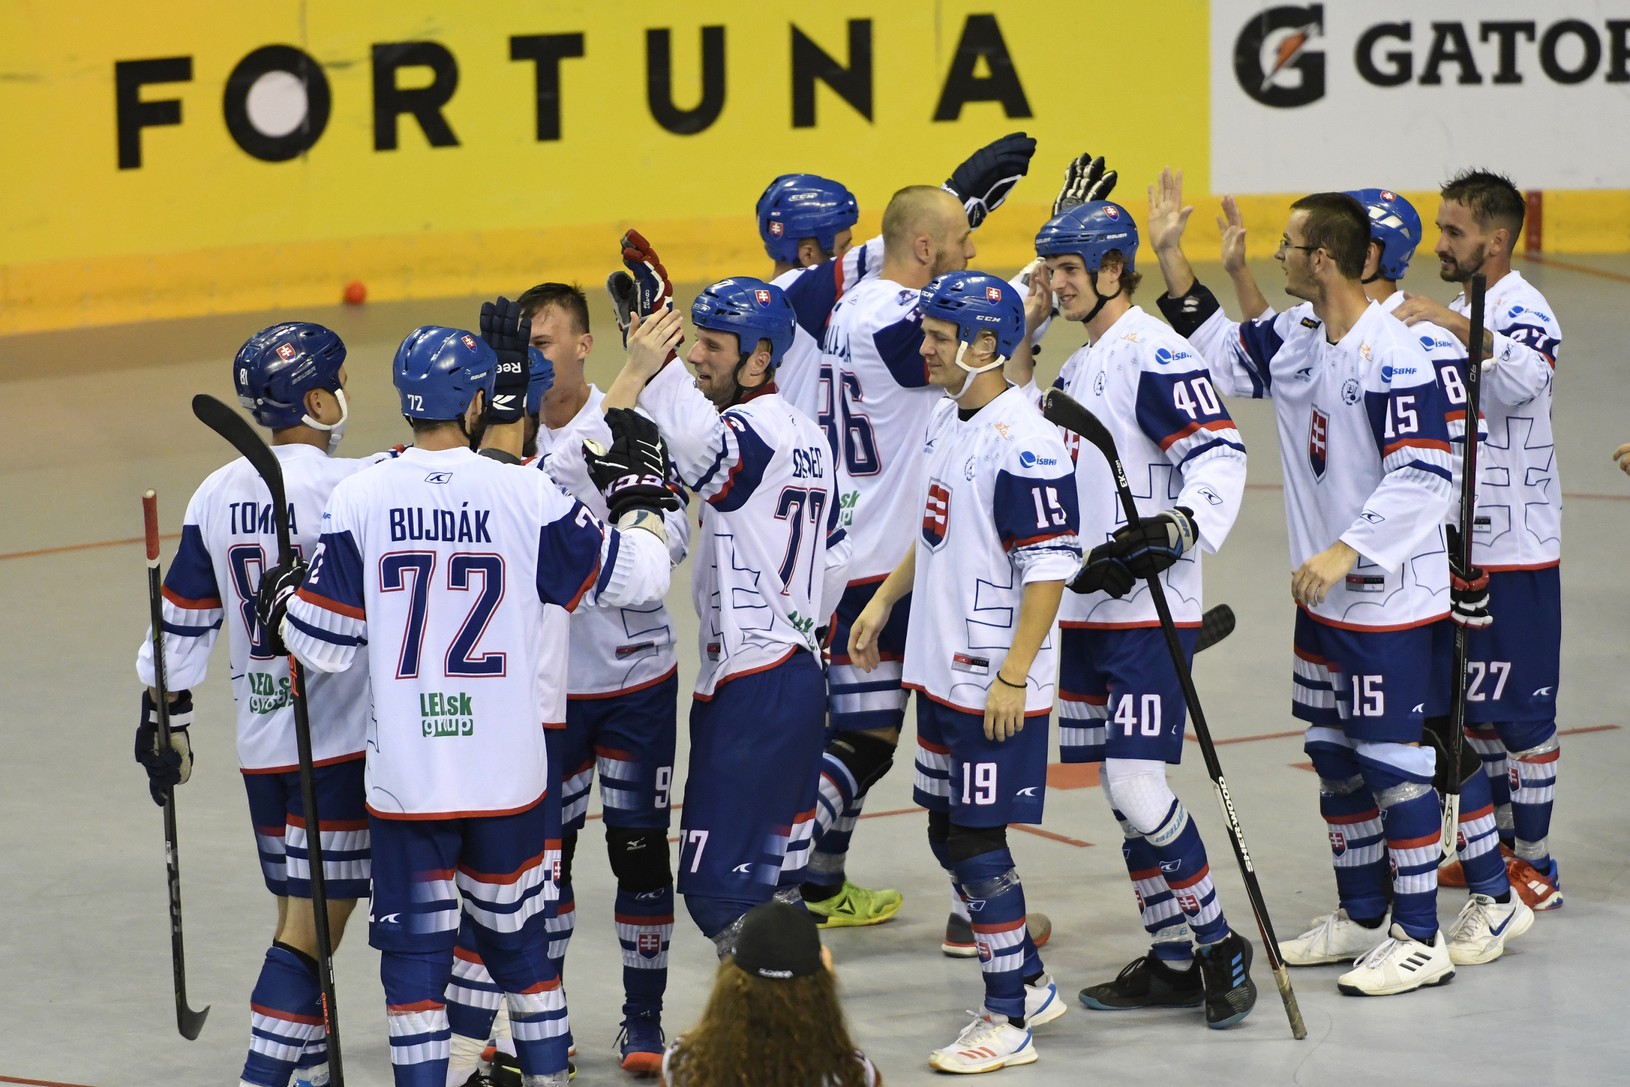 Hráči Slovenska oslavujú víťazstvo